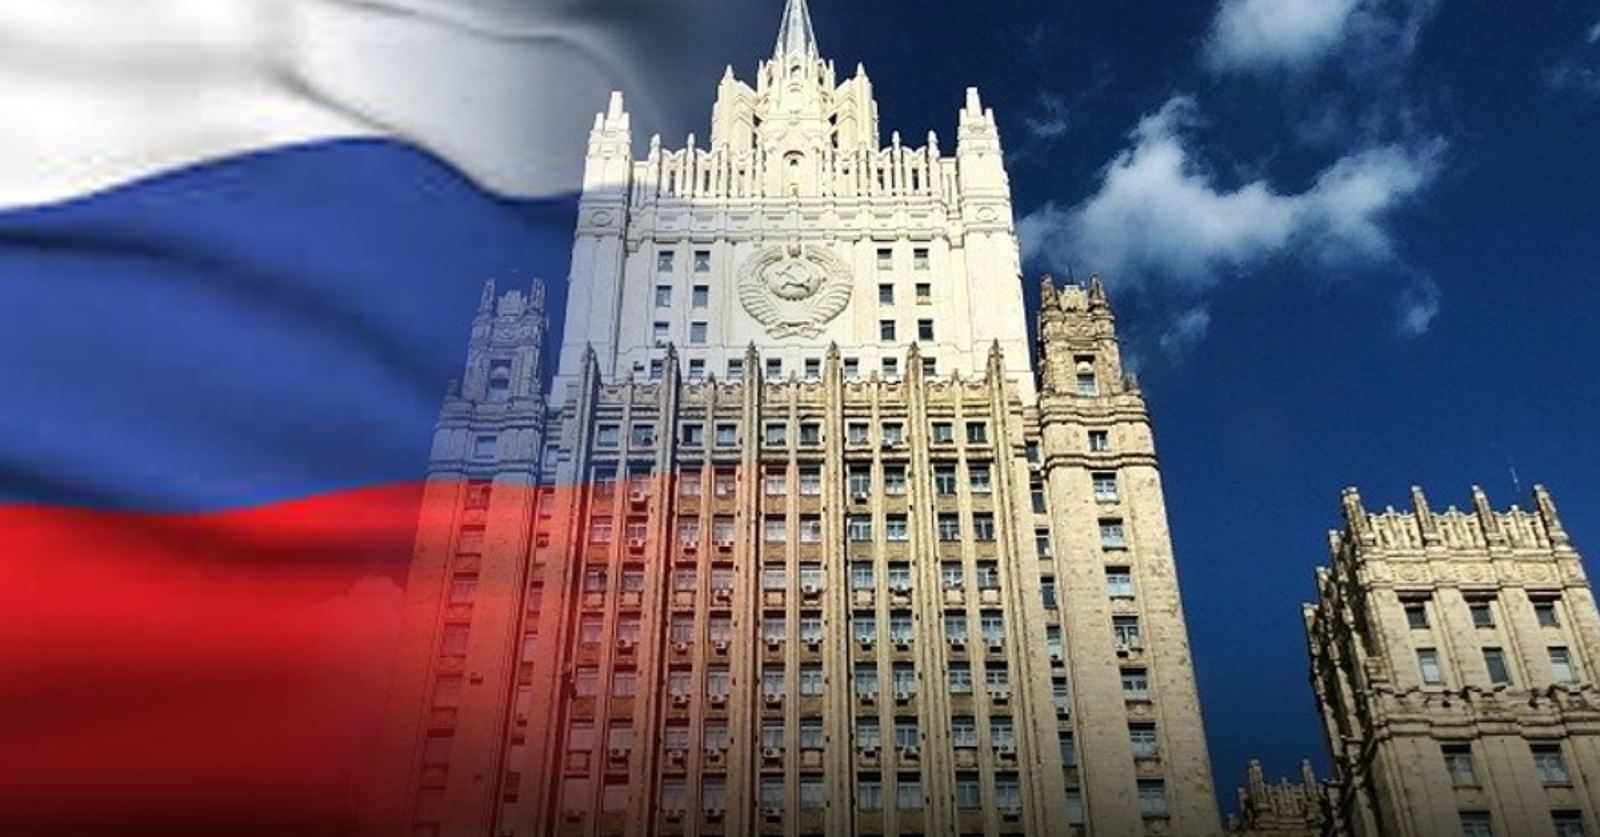 رسميا .. تدخل روسي مباشر لإنهاء الحرب باليمن (تفاصيل)